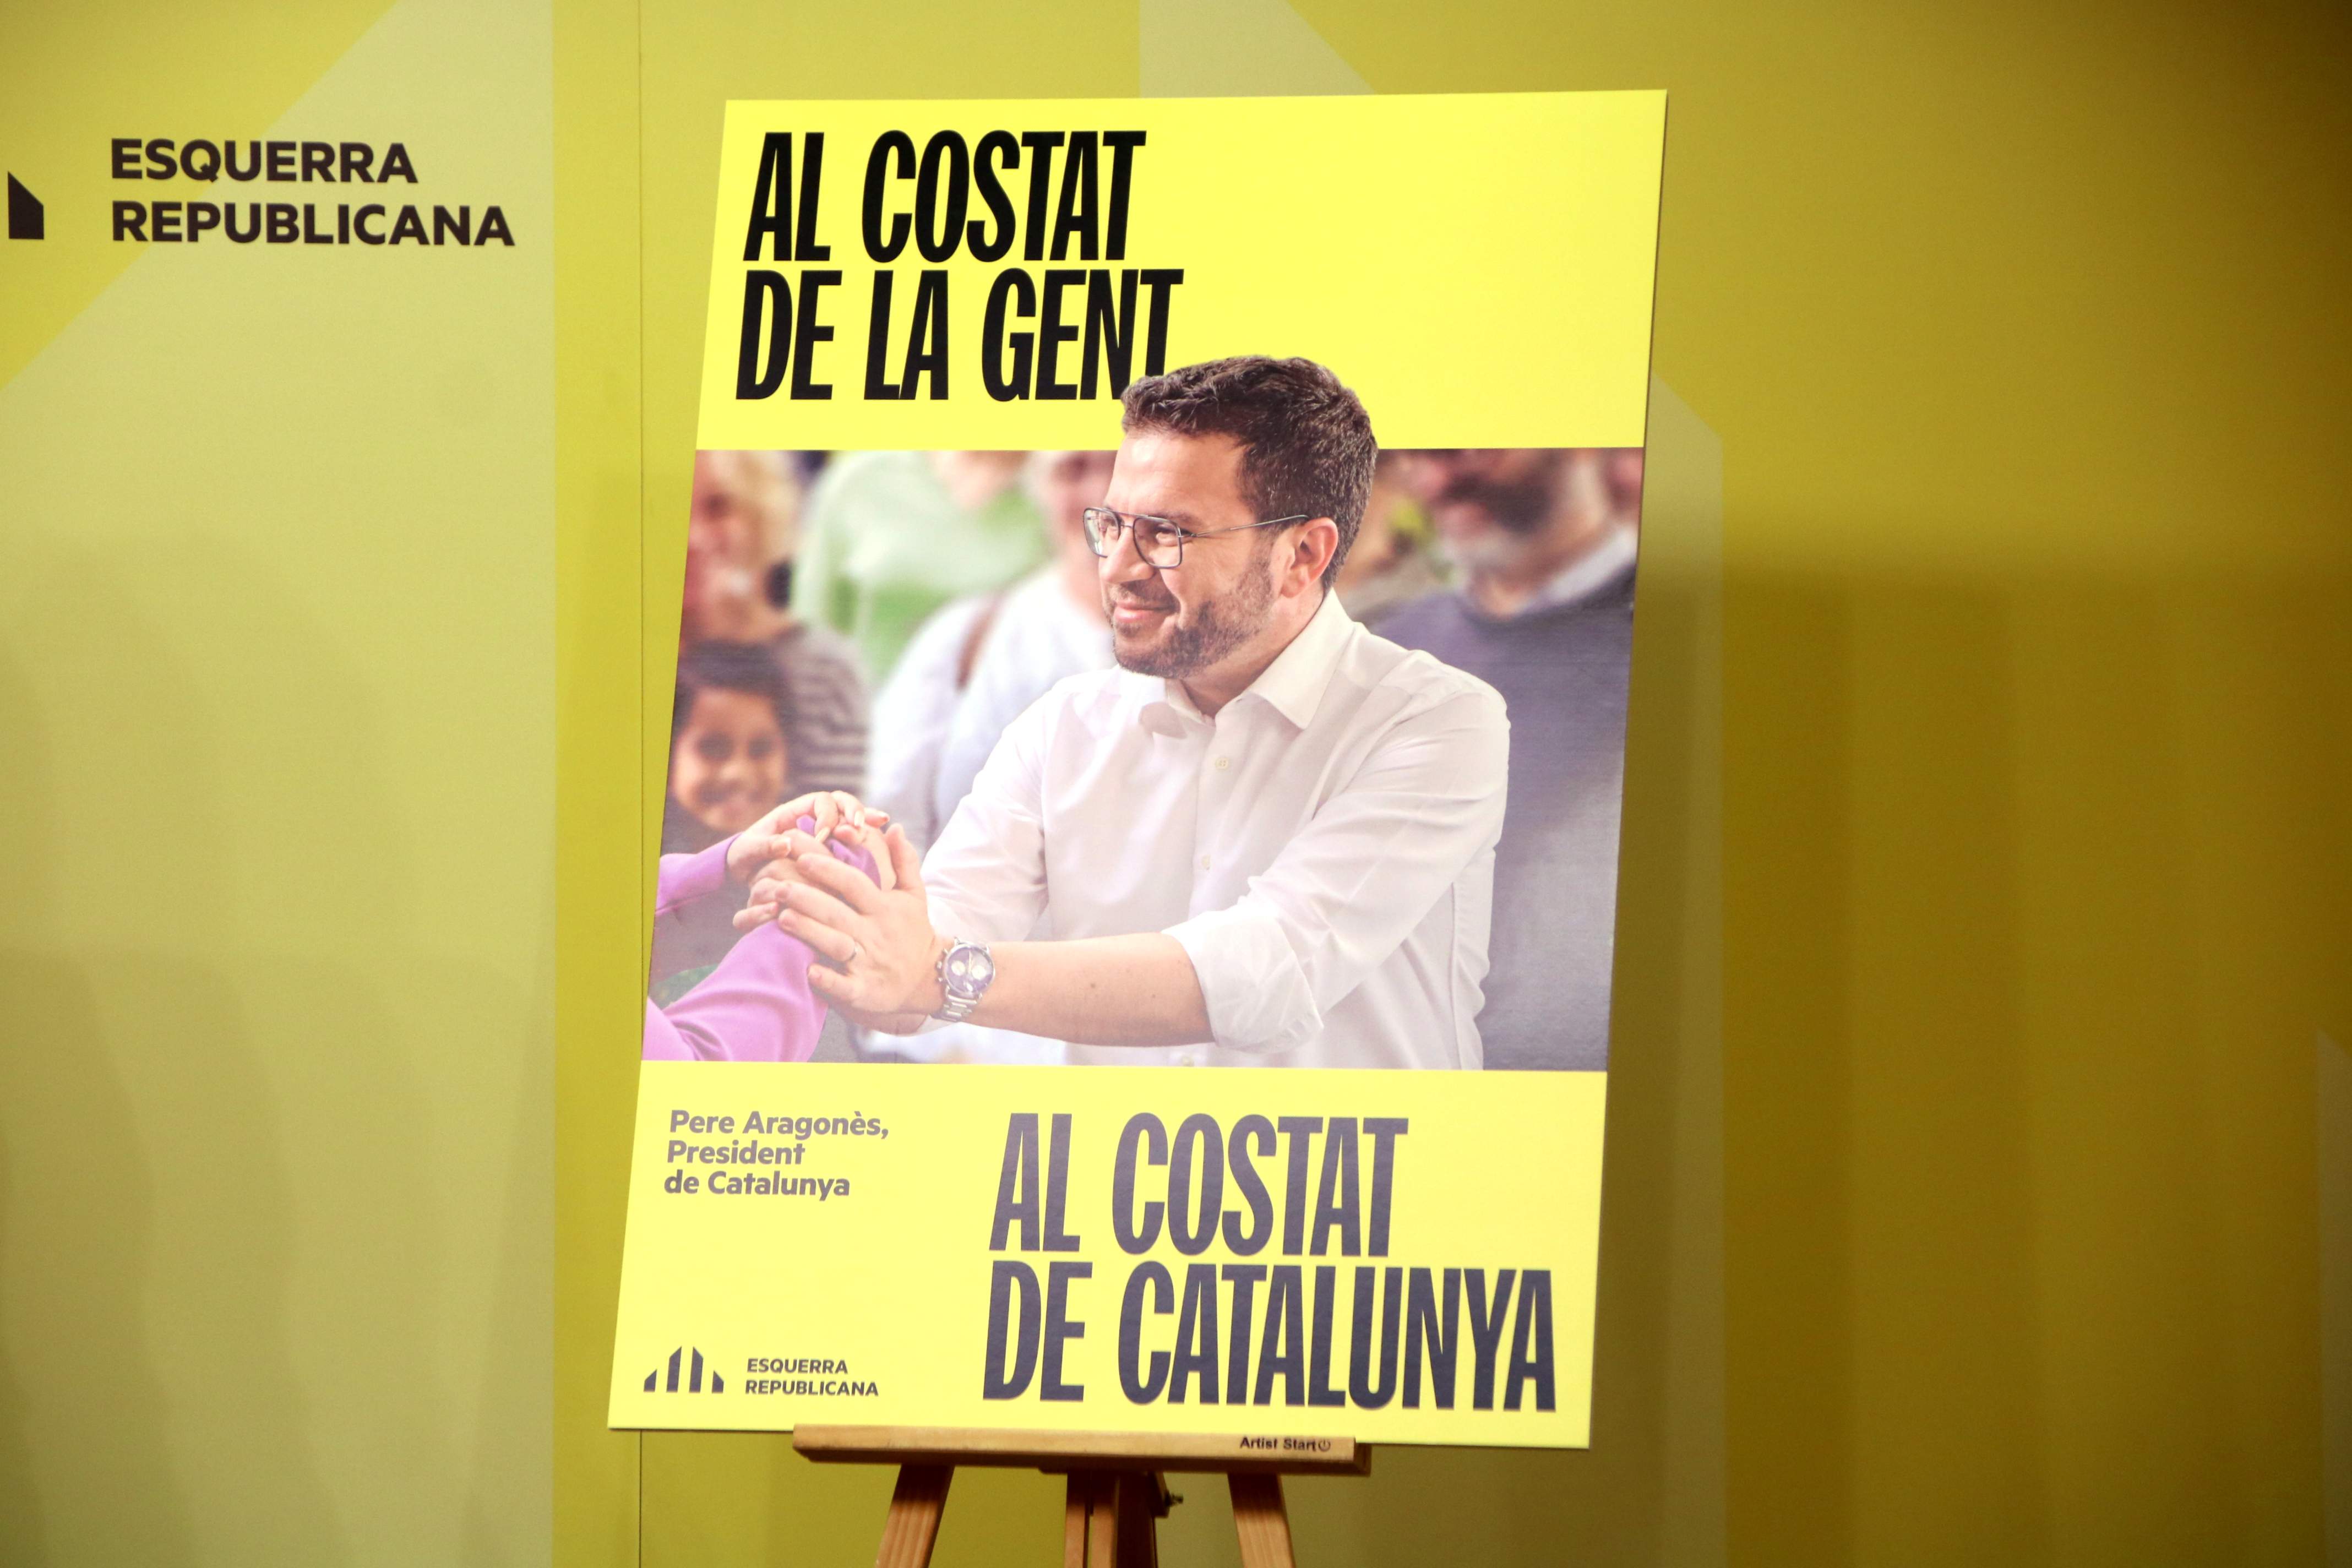 "Al costat de la gent, al costat de Catalunya": ERC actualiza su lema para el 12-M